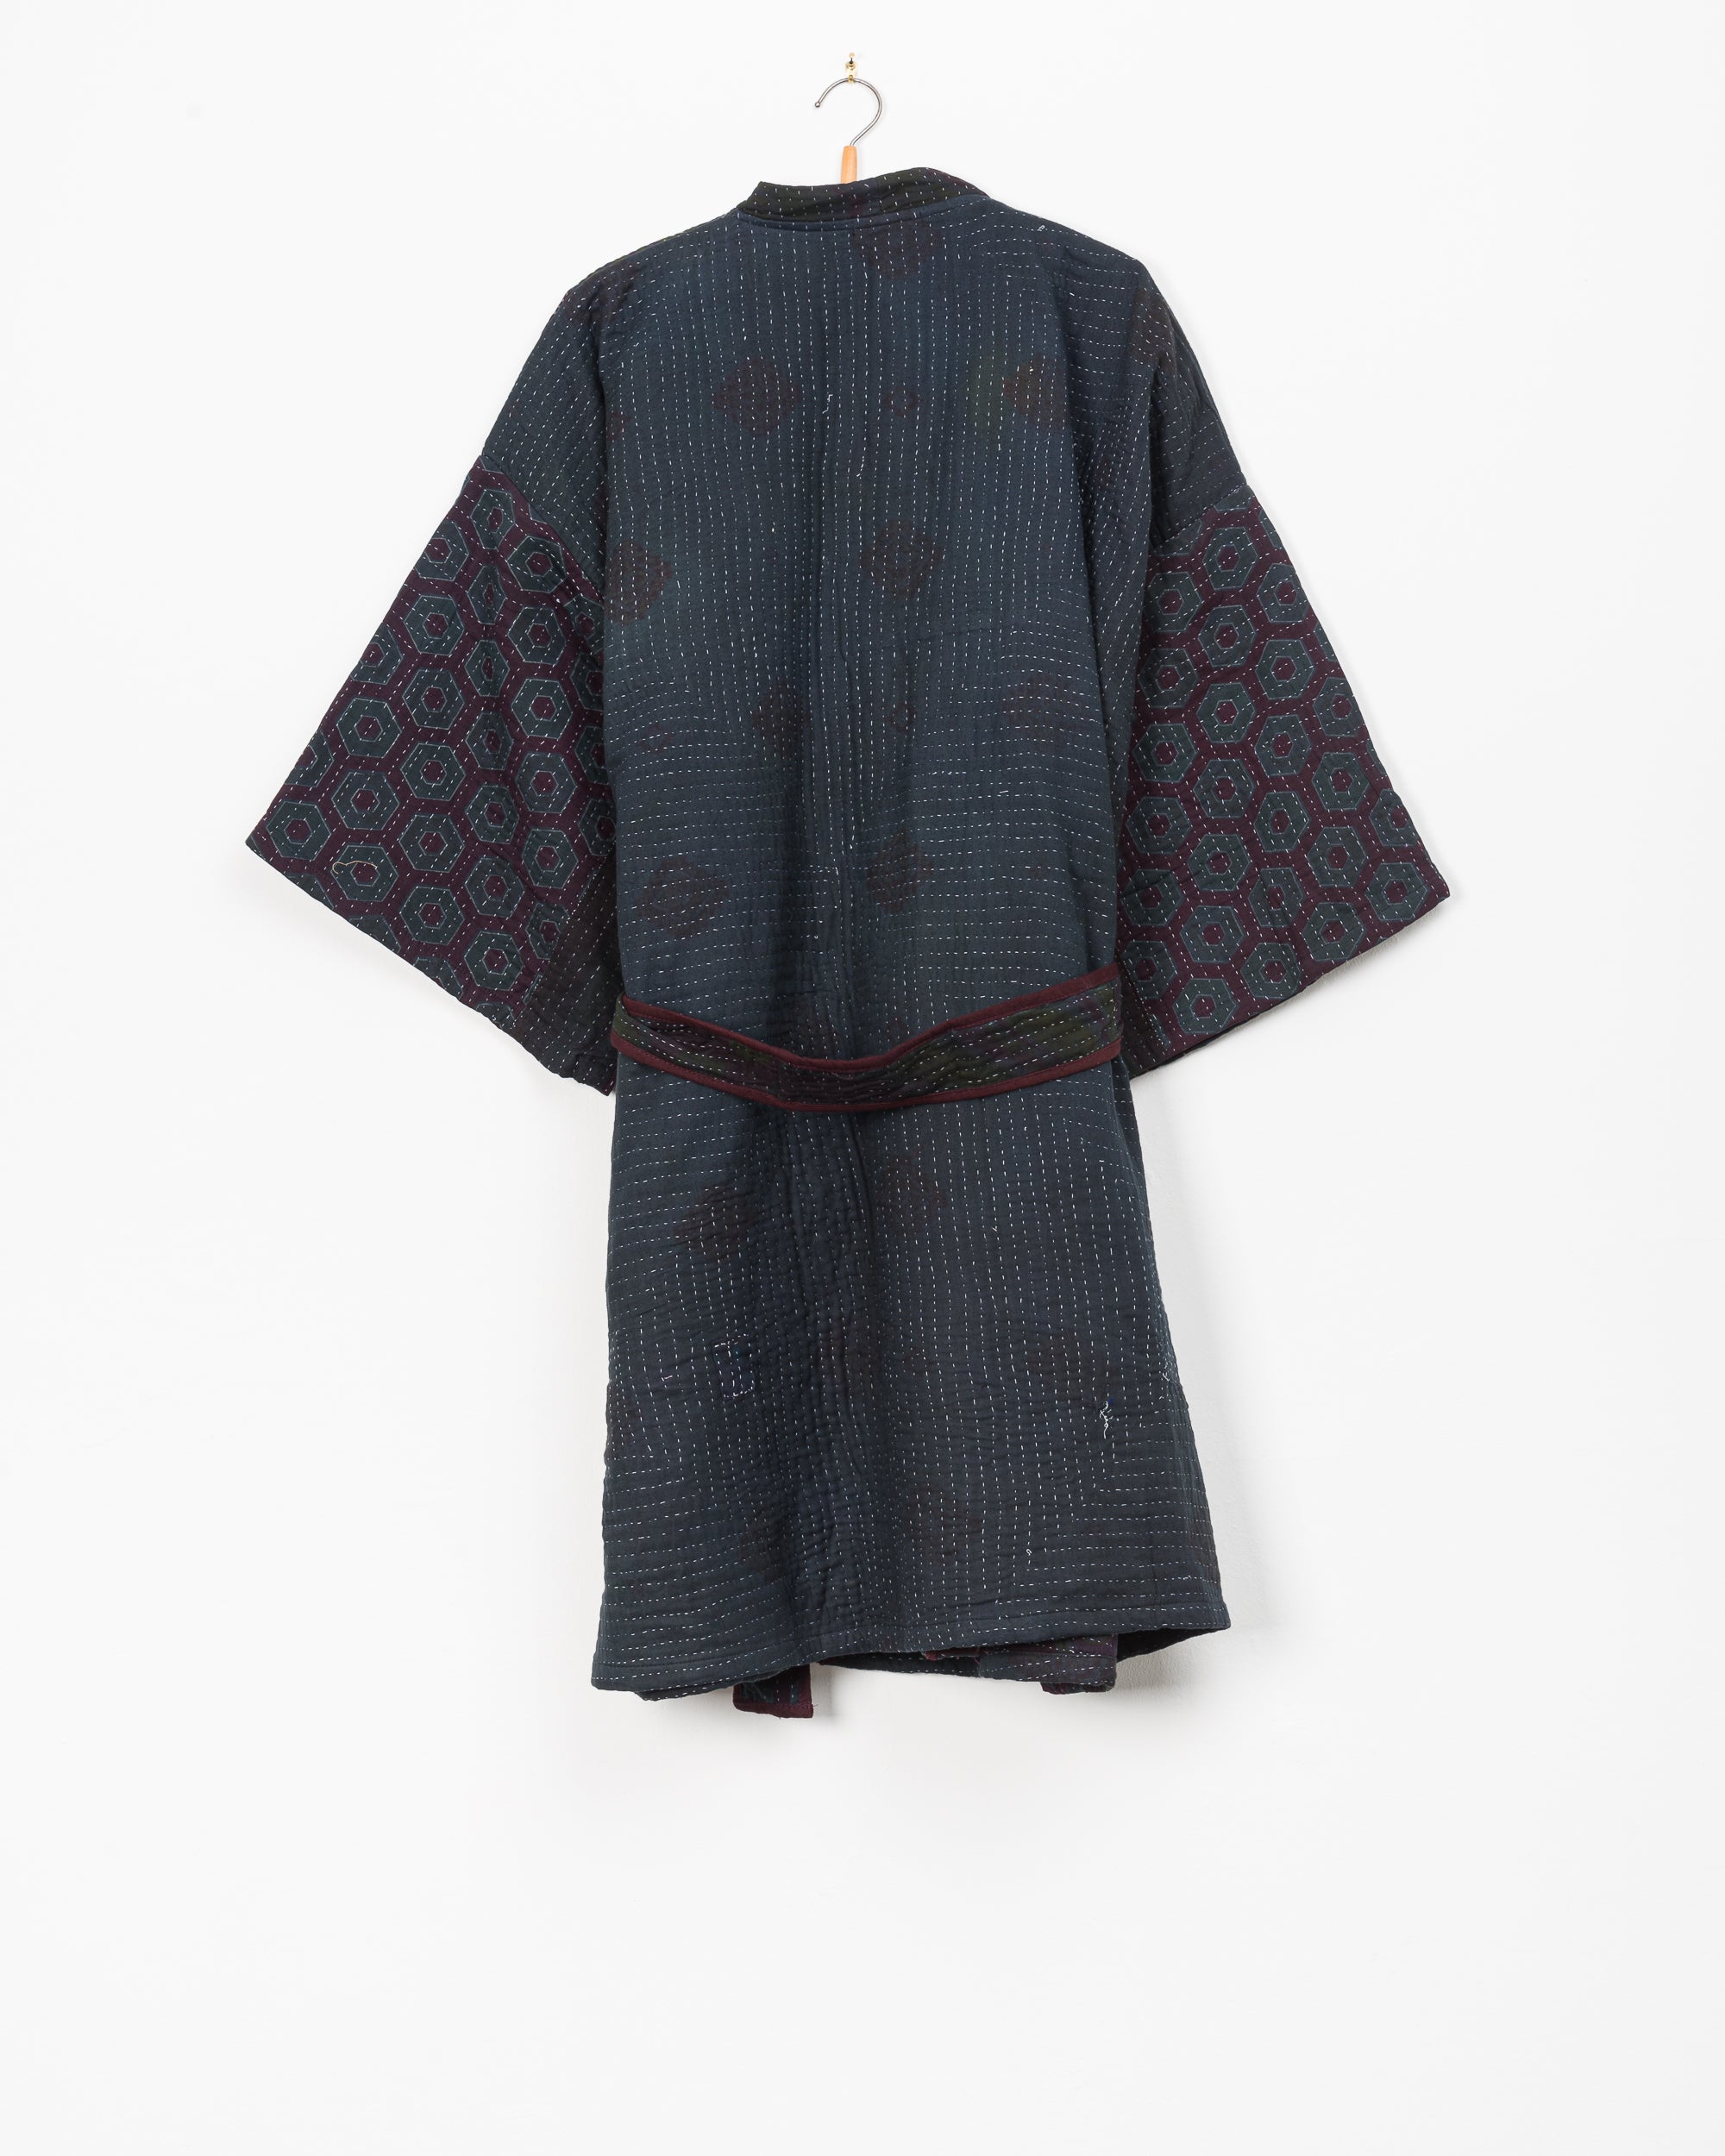 Taran Robe in Quilted Kantha - M/L